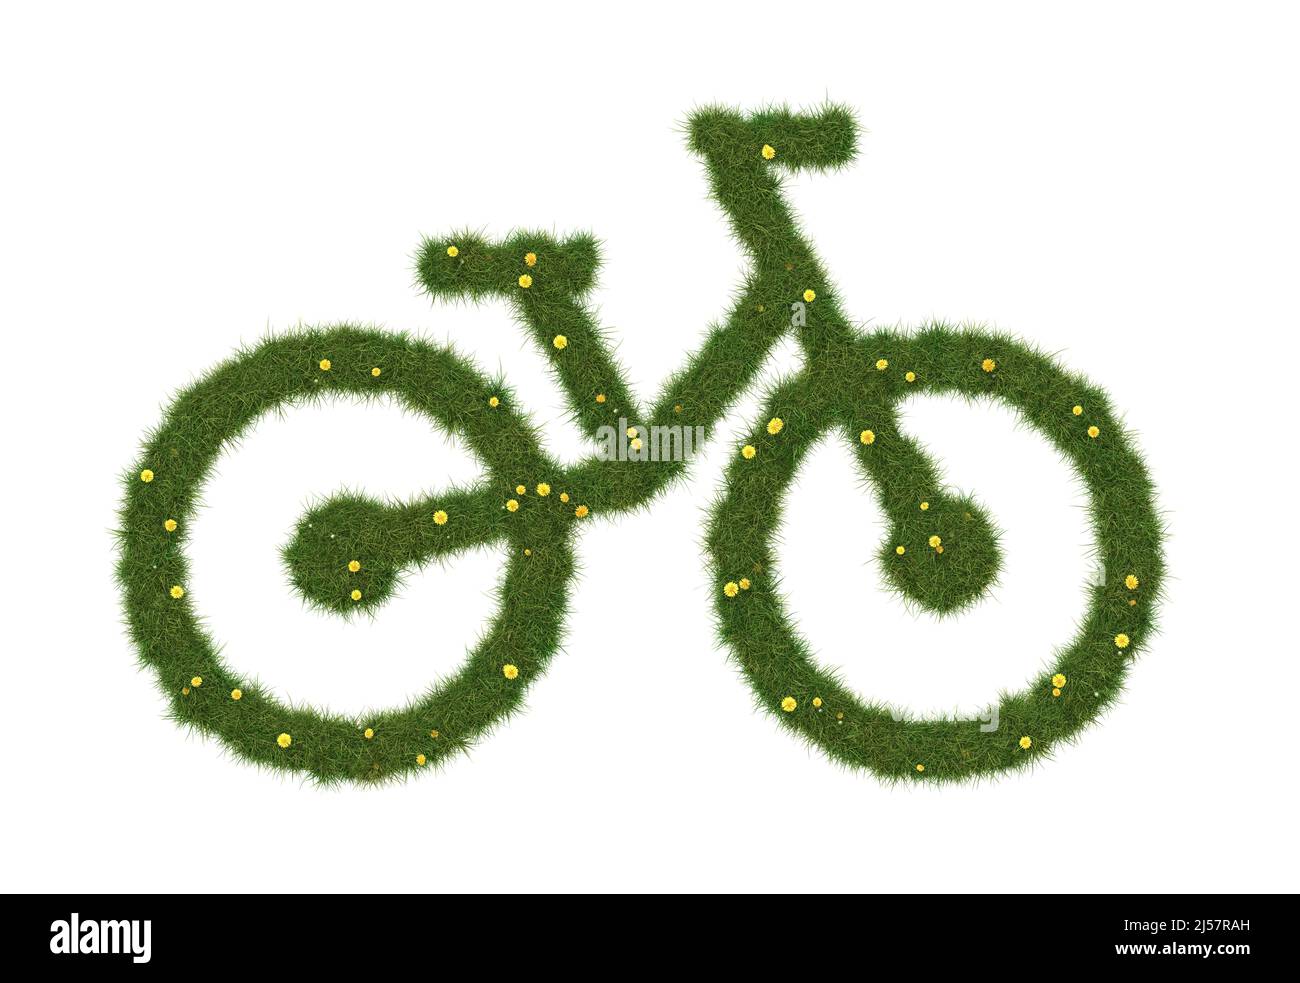 Logo de vélo en herbe réaliste. Concept de transport écologique. 3D illustration. Banque D'Images